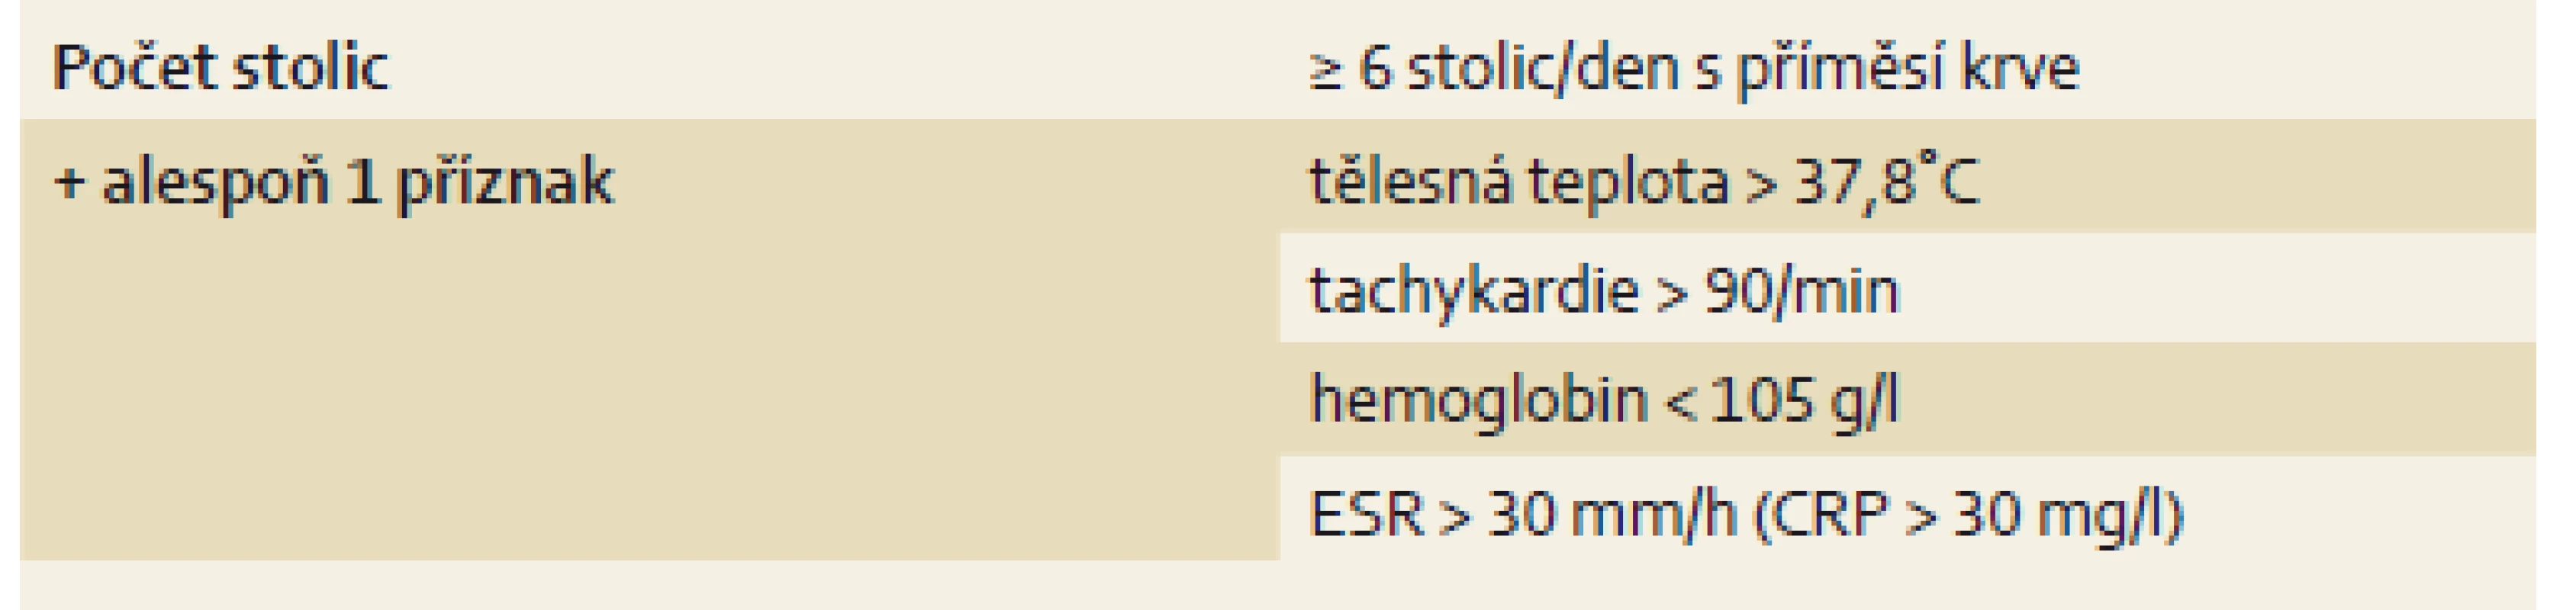 Klasifikace těžké kolitidy. Upraveno dle [11].
Tab. 1. Classification of severe colitis. Adapted from [11].